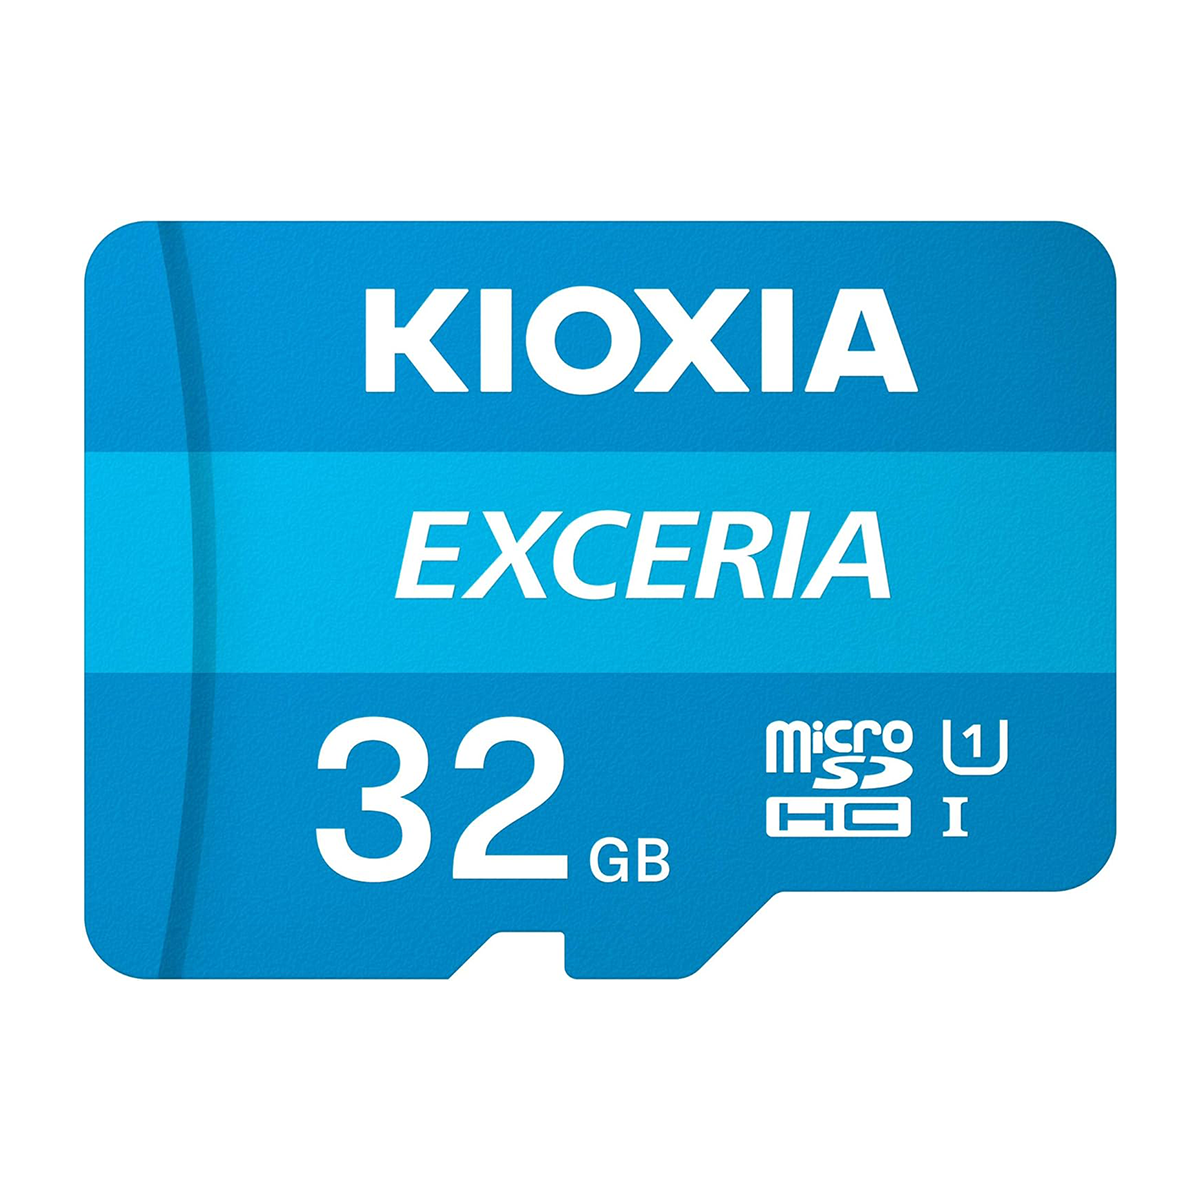 کارت حافظه microSDHC کیوکسیا مدل EXCERIA کلاس 10 استاندارد UHS-I سرعت 100MBps ظرفیت 32 گیگابایت